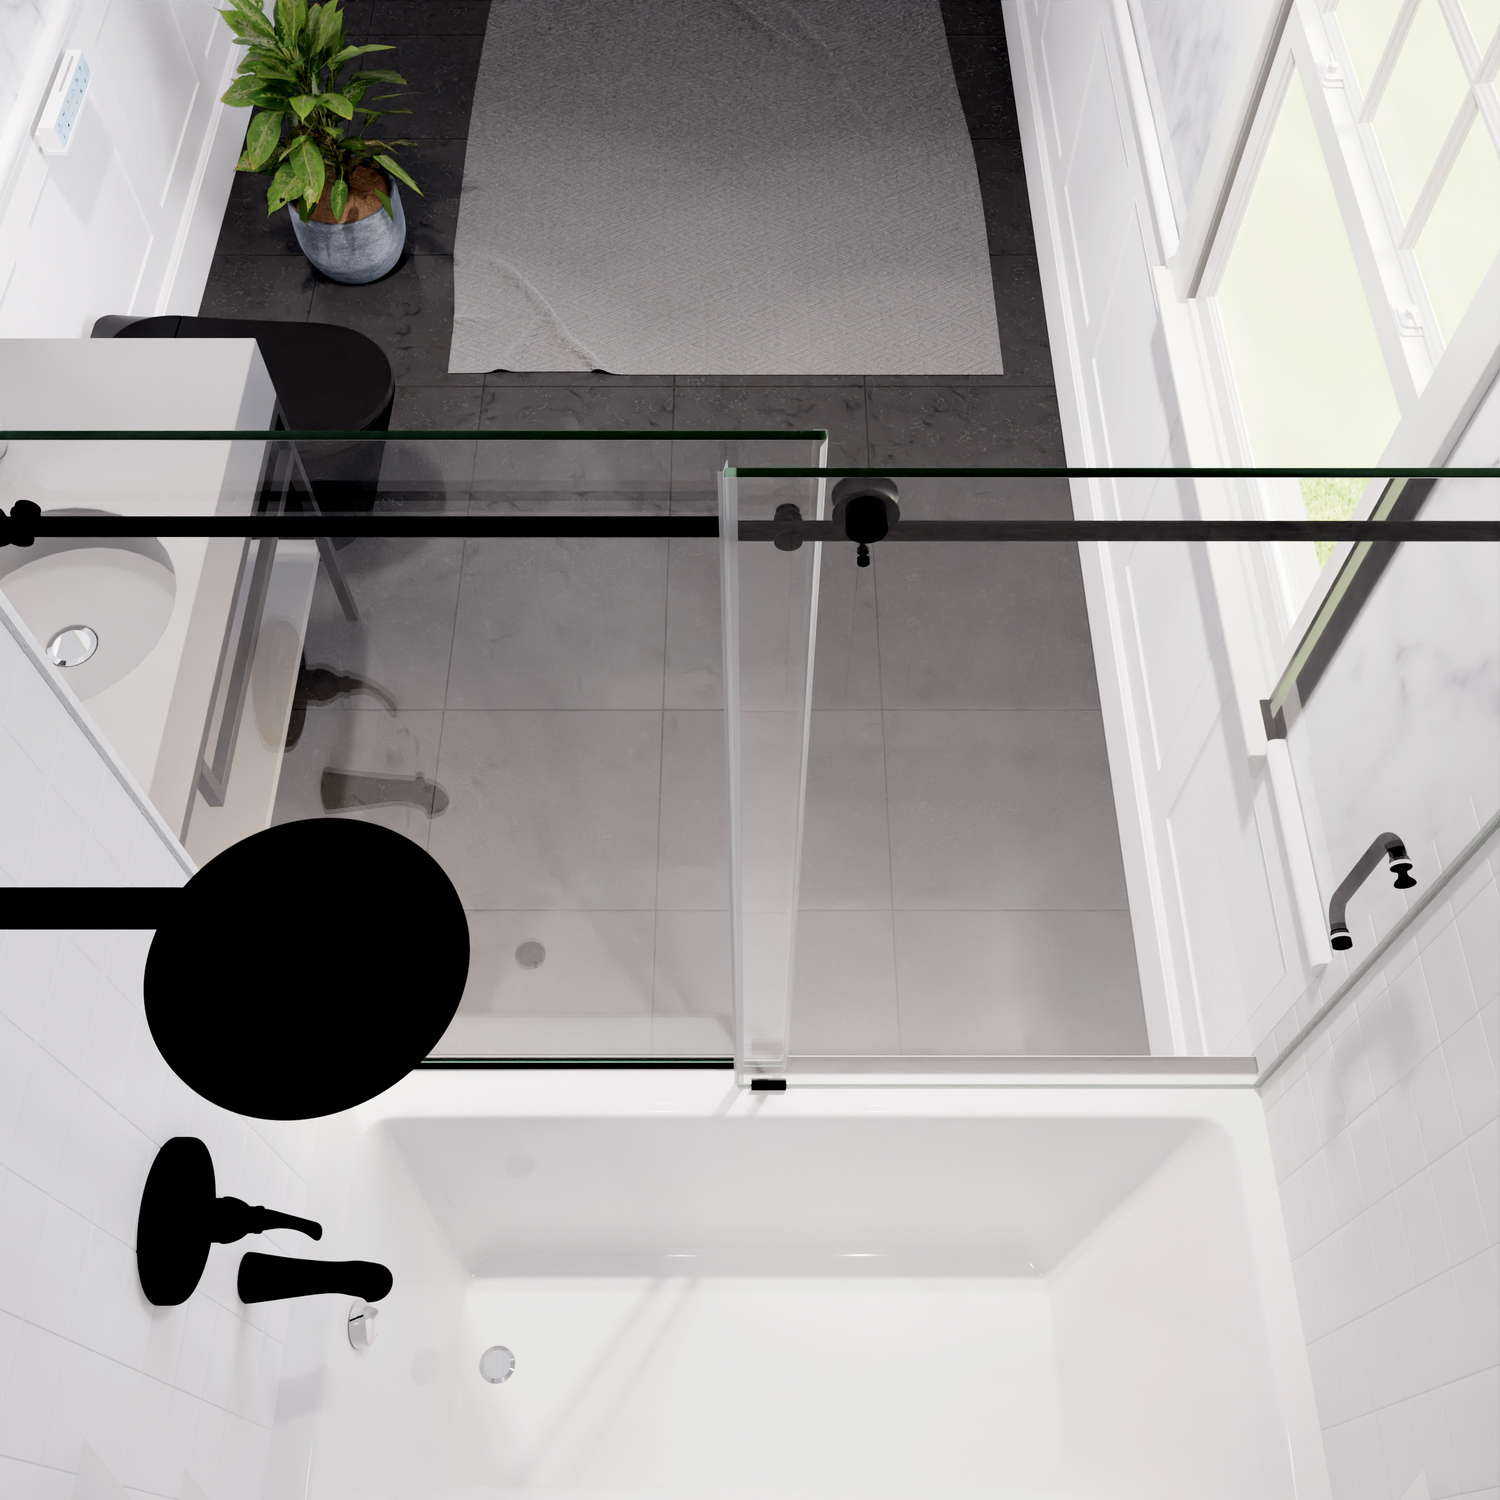 frameless hinged shower door Anzzi SHOWER - Tubs Doors - Sliding Black